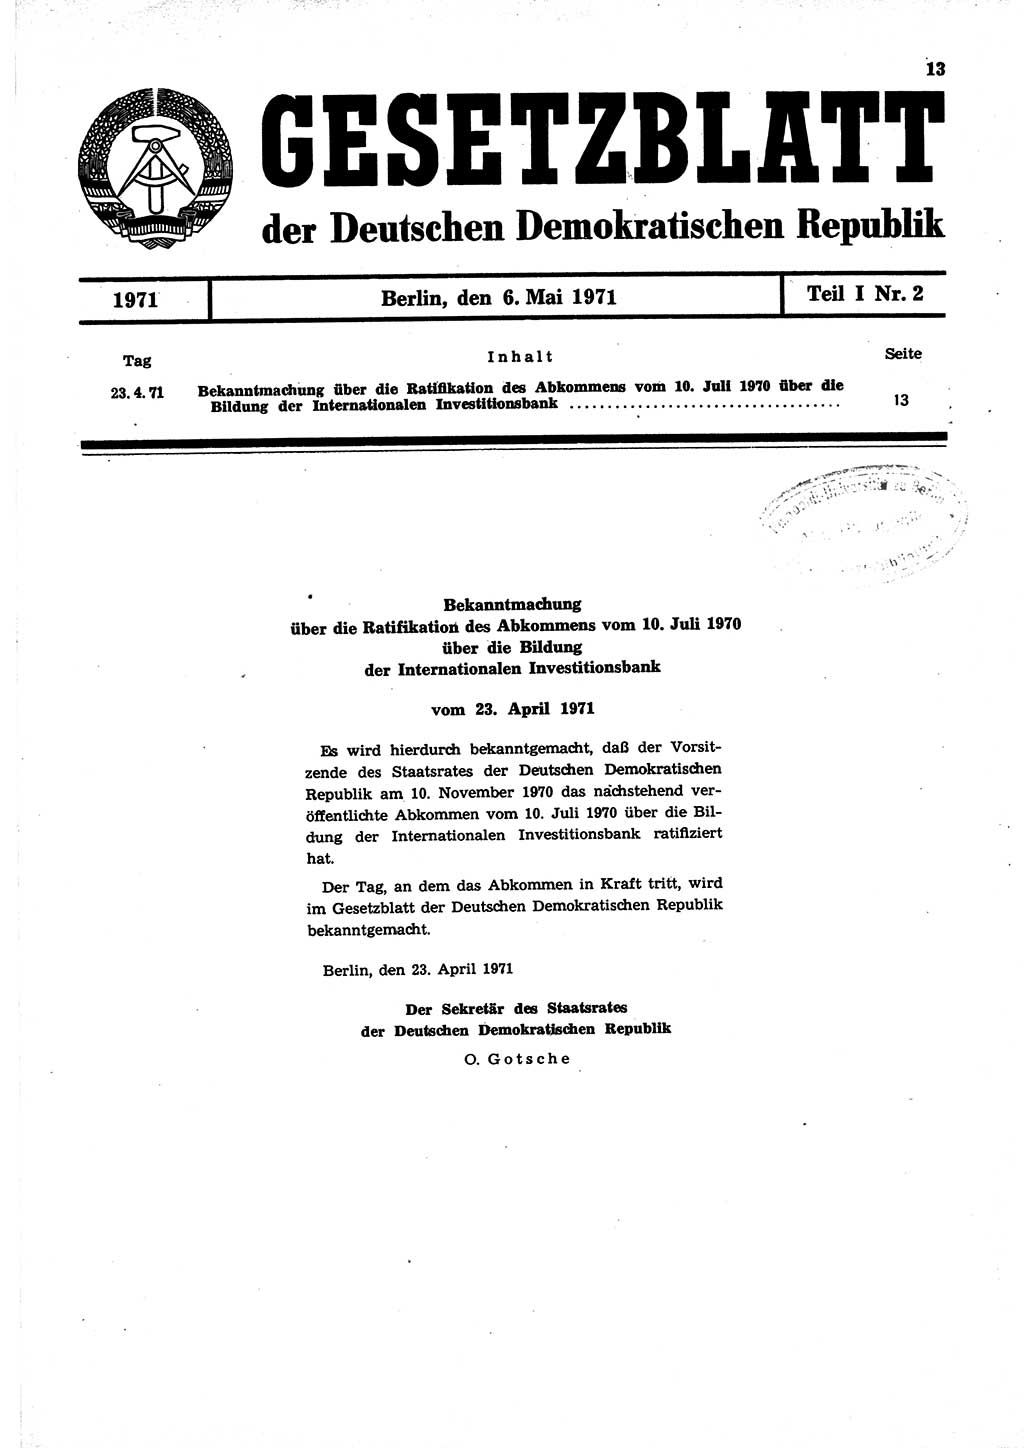 Gesetzblatt (GBl.) der Deutschen Demokratischen Republik (DDR) Teil Ⅰ 1971, Seite 13 (GBl. DDR Ⅰ 1971, S. 13)